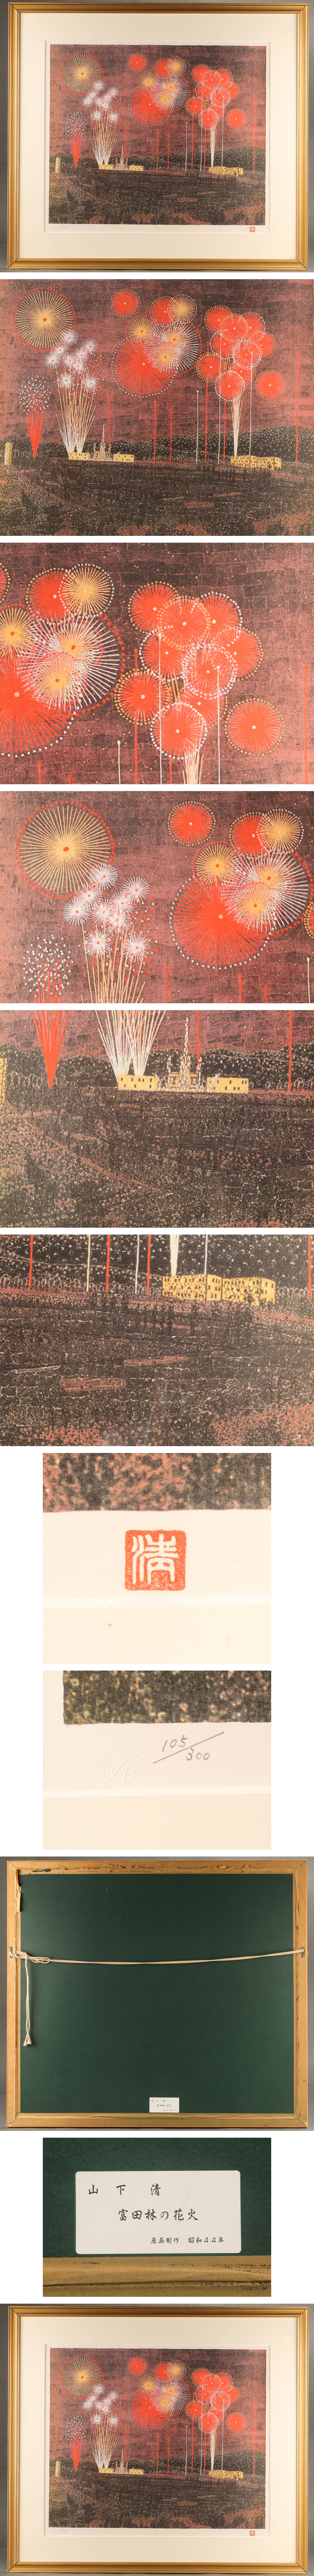 人気正規品山下清 リトグラフ 「宮田林の花火」 105/300 KI359 石版画、リトグラフ